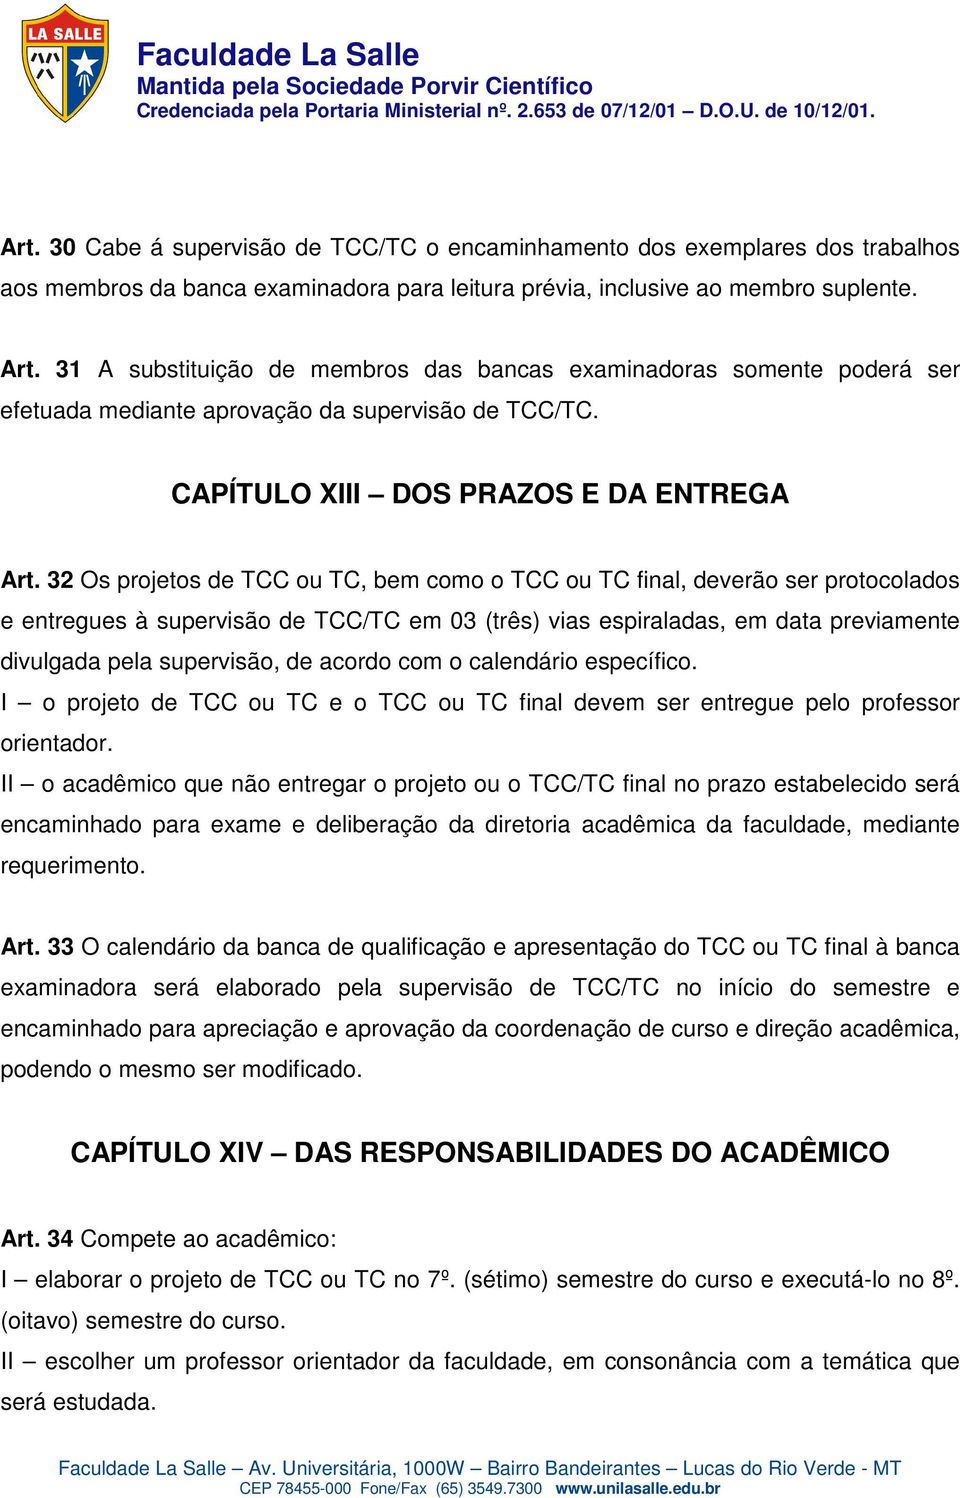 32 Os projetos de TCC ou TC, bem como o TCC ou TC final, deverão ser protocolados e entregues à supervisão de TCC/TC em 03 (três) vias espiraladas, em data previamente divulgada pela supervisão, de